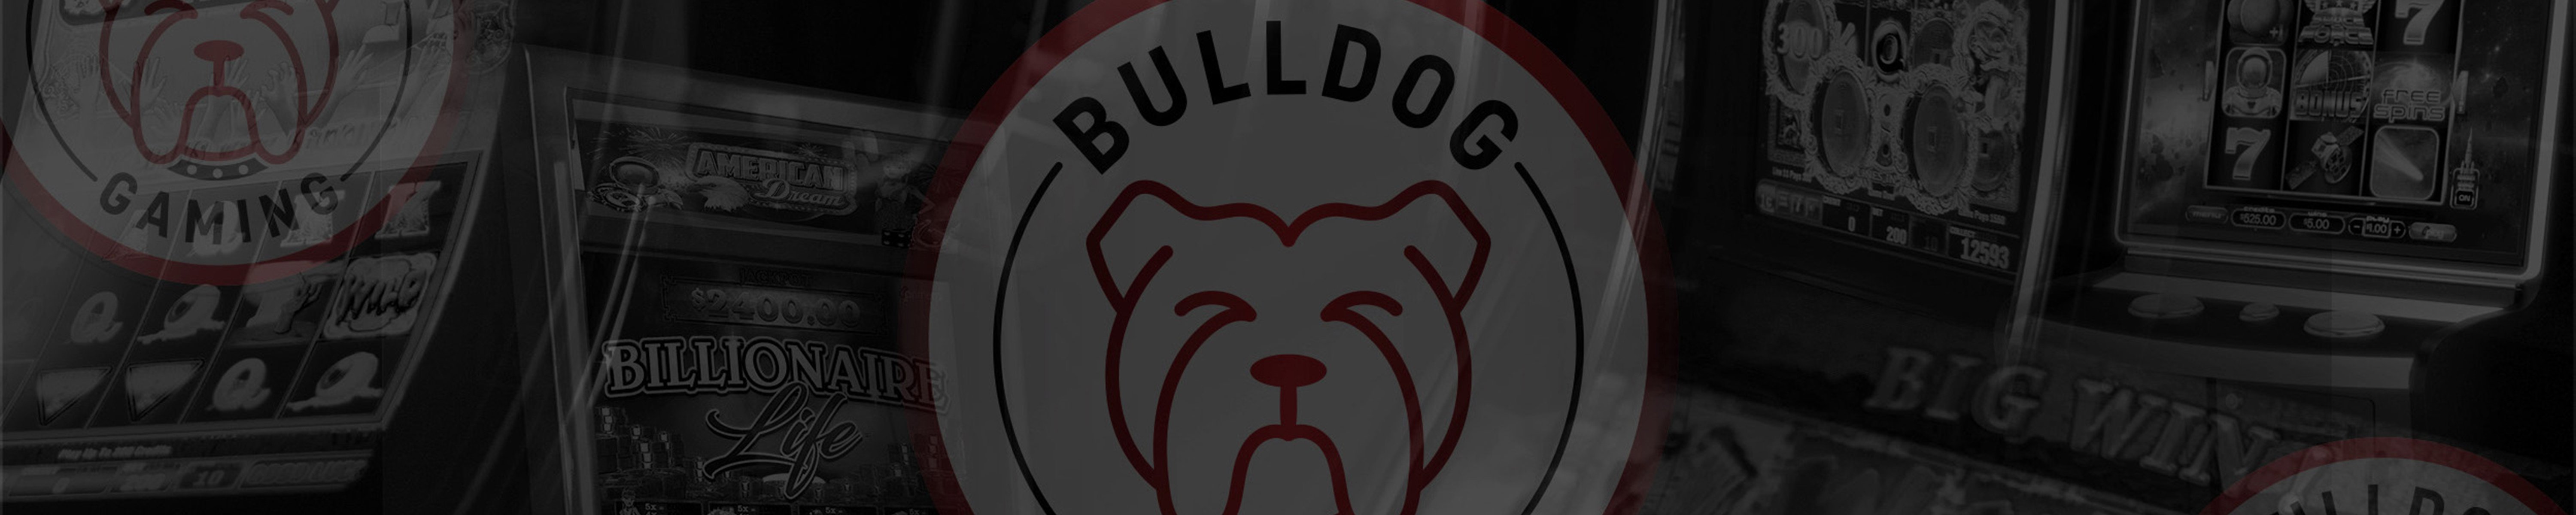 GA_Bulldog Gaming_Header